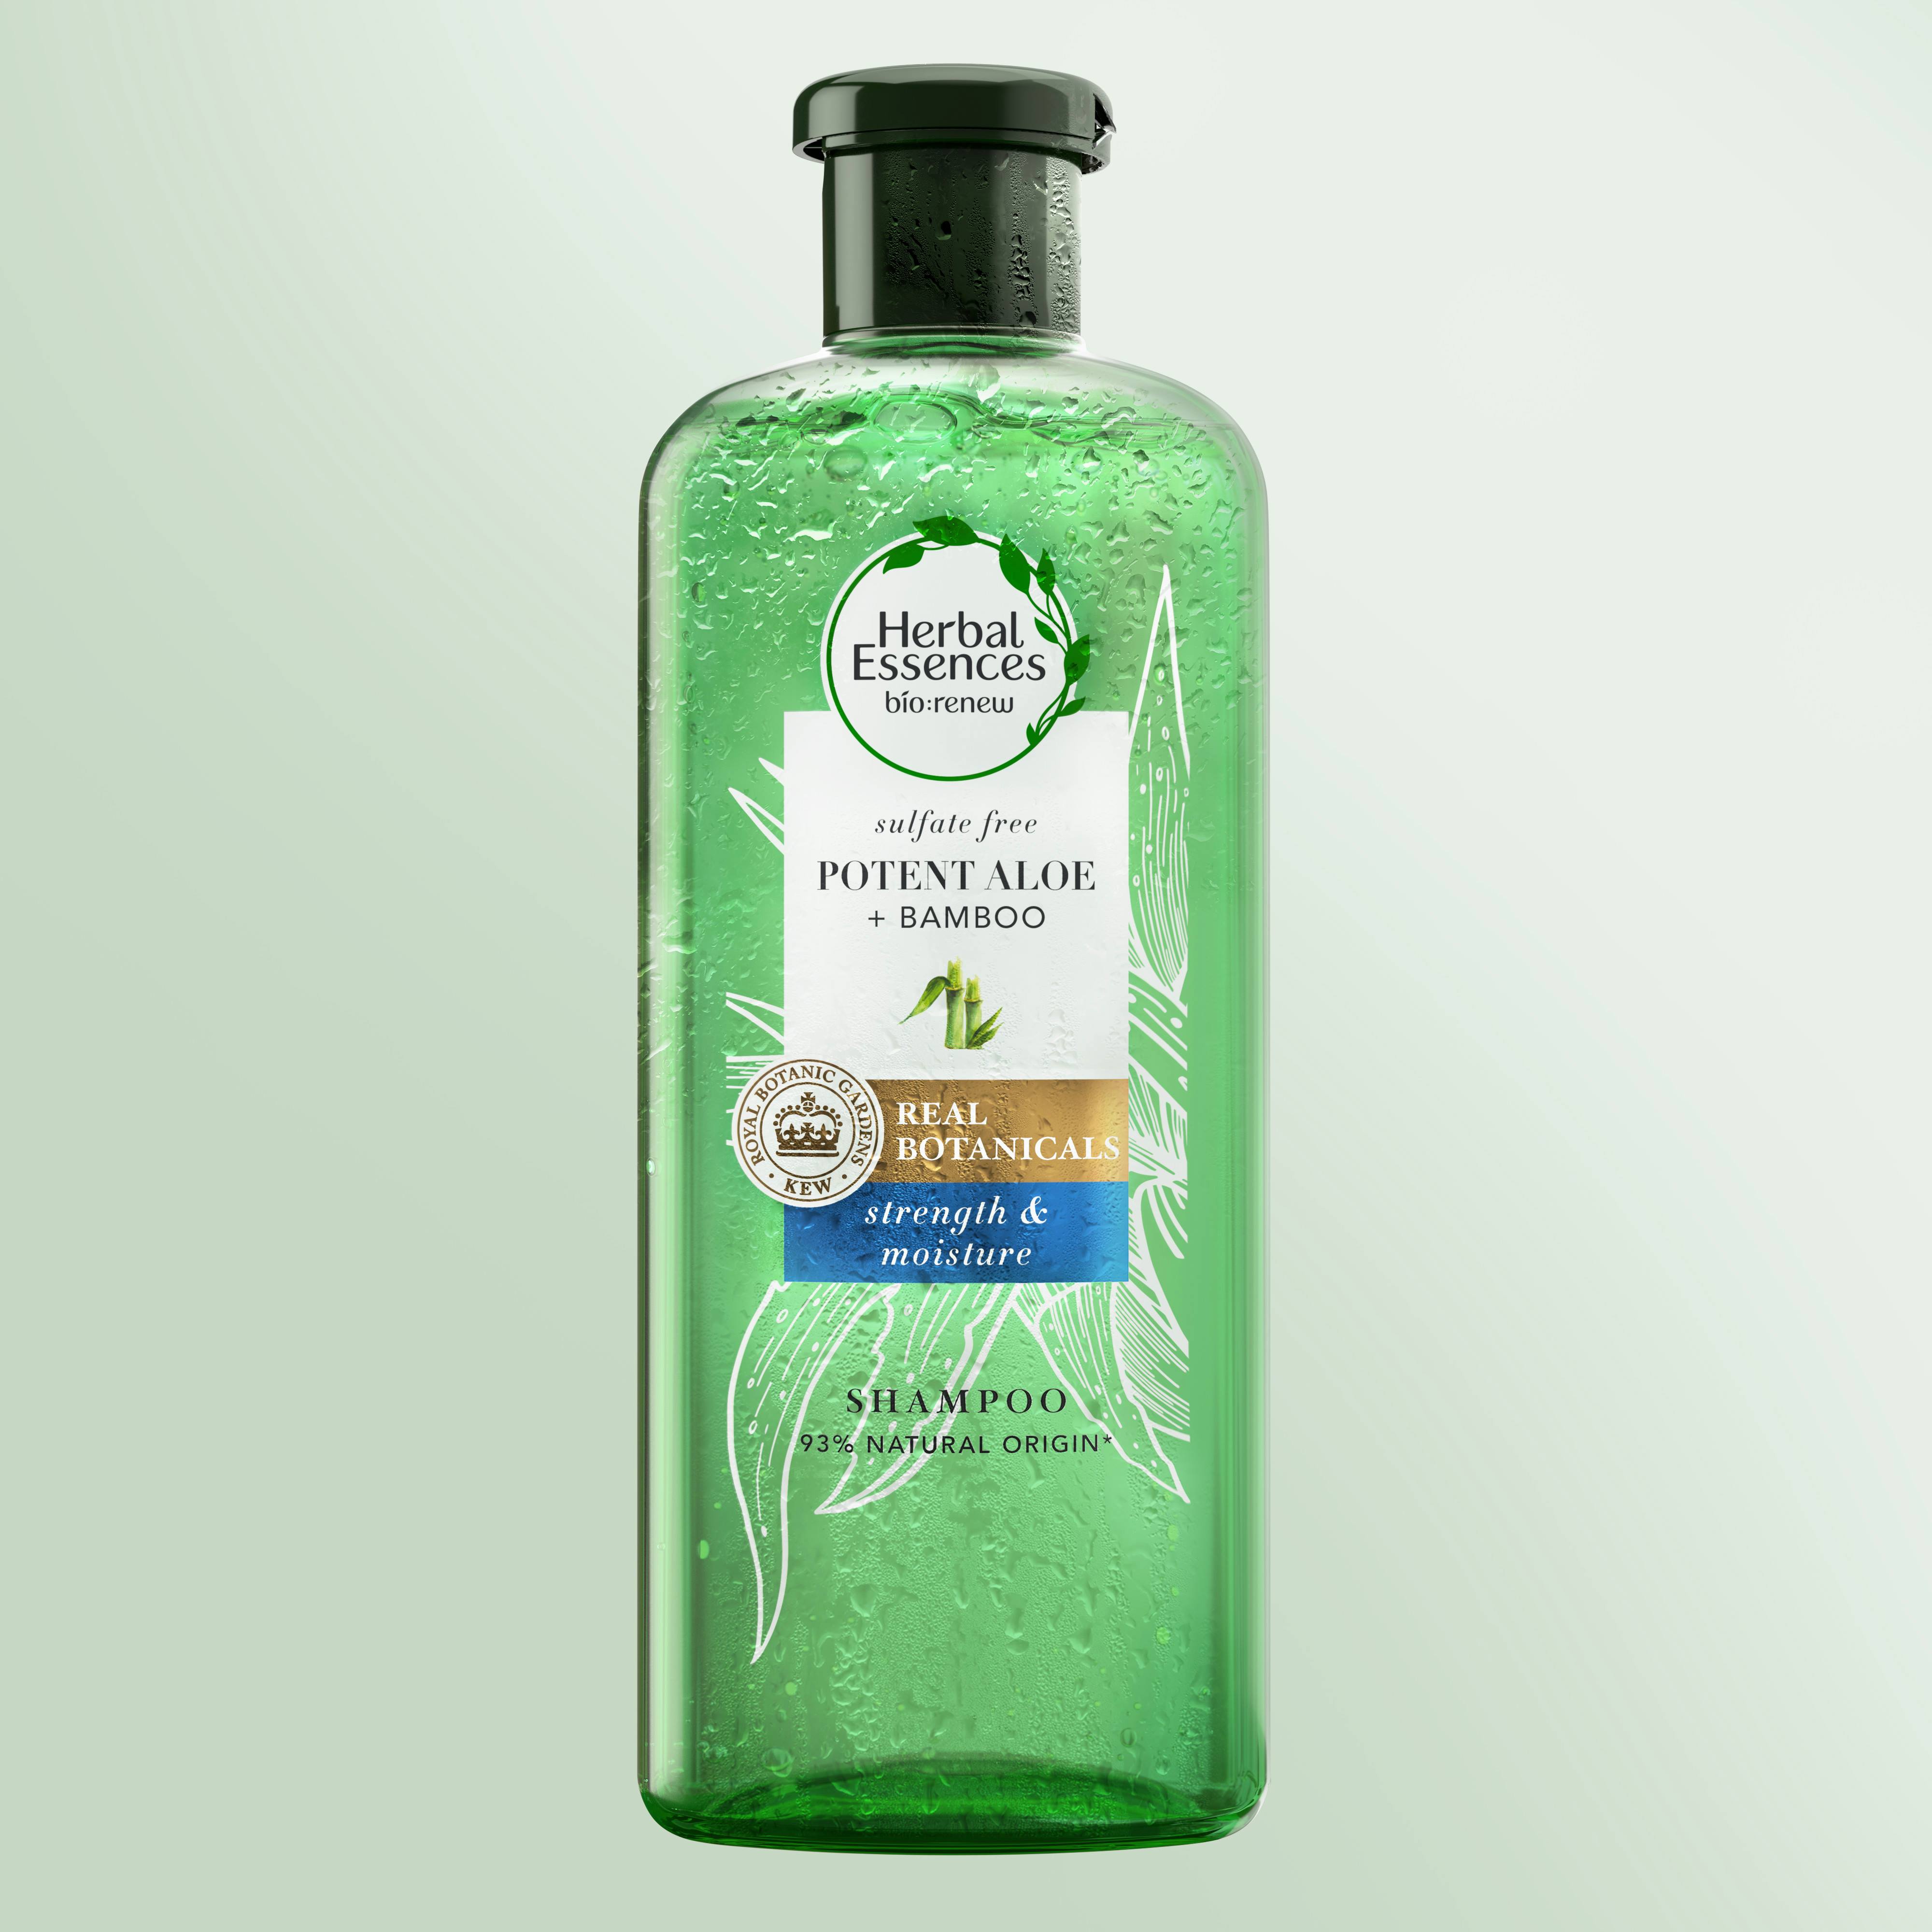 herbal essences szampon wlosy cienkie